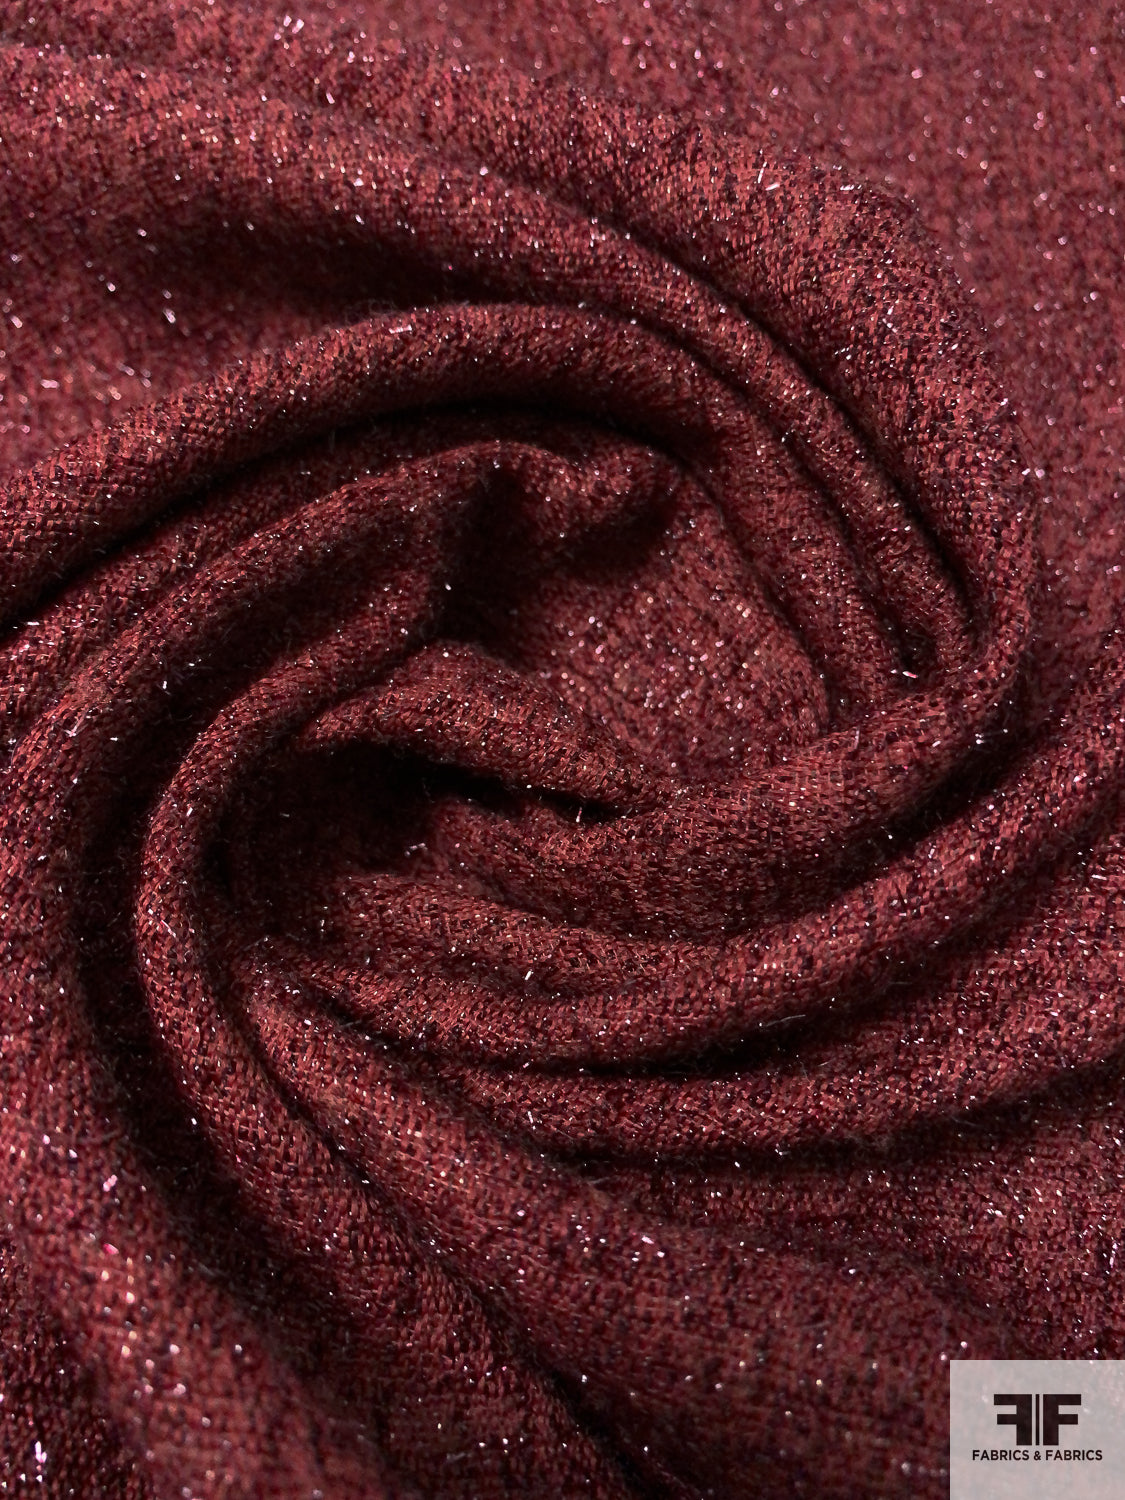 French Glam Novelty Lurex Tweed - Shimmery Burgundy